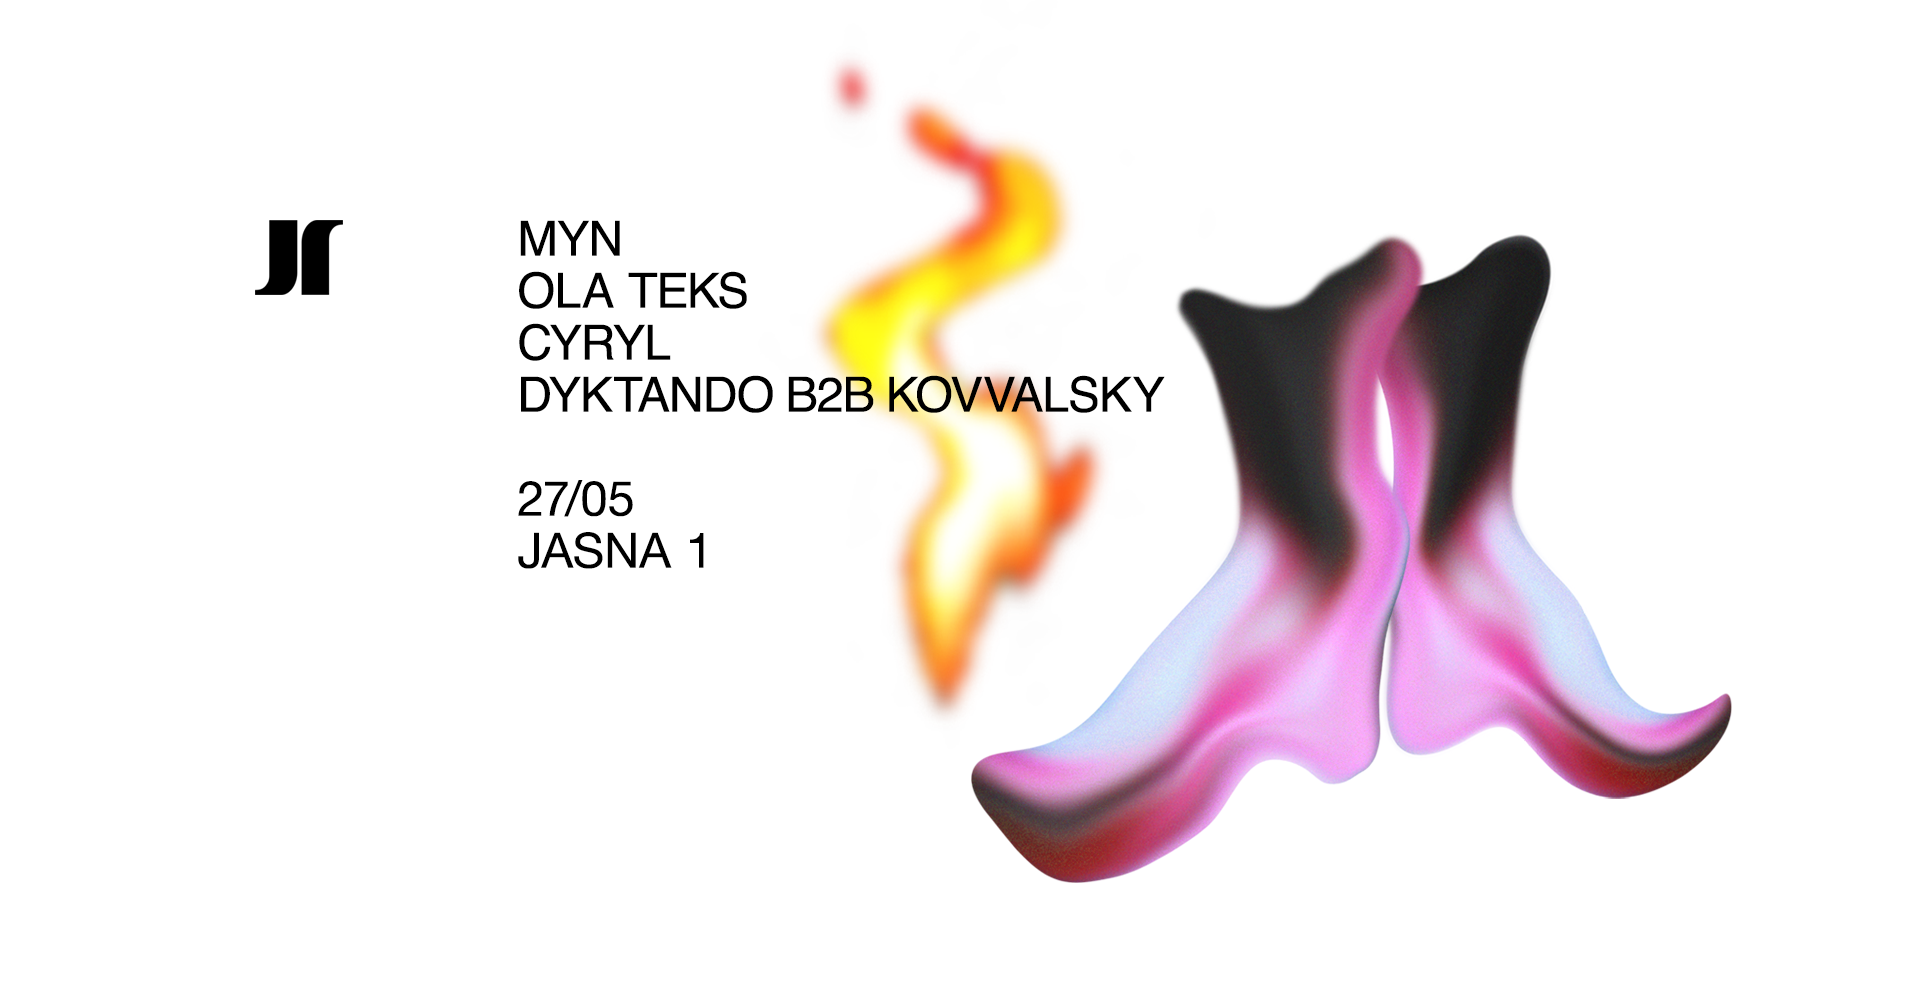 J1 - Myn, Dyktando B2B Kovvalsky / Ola Teks, Cyryl - フライヤー表